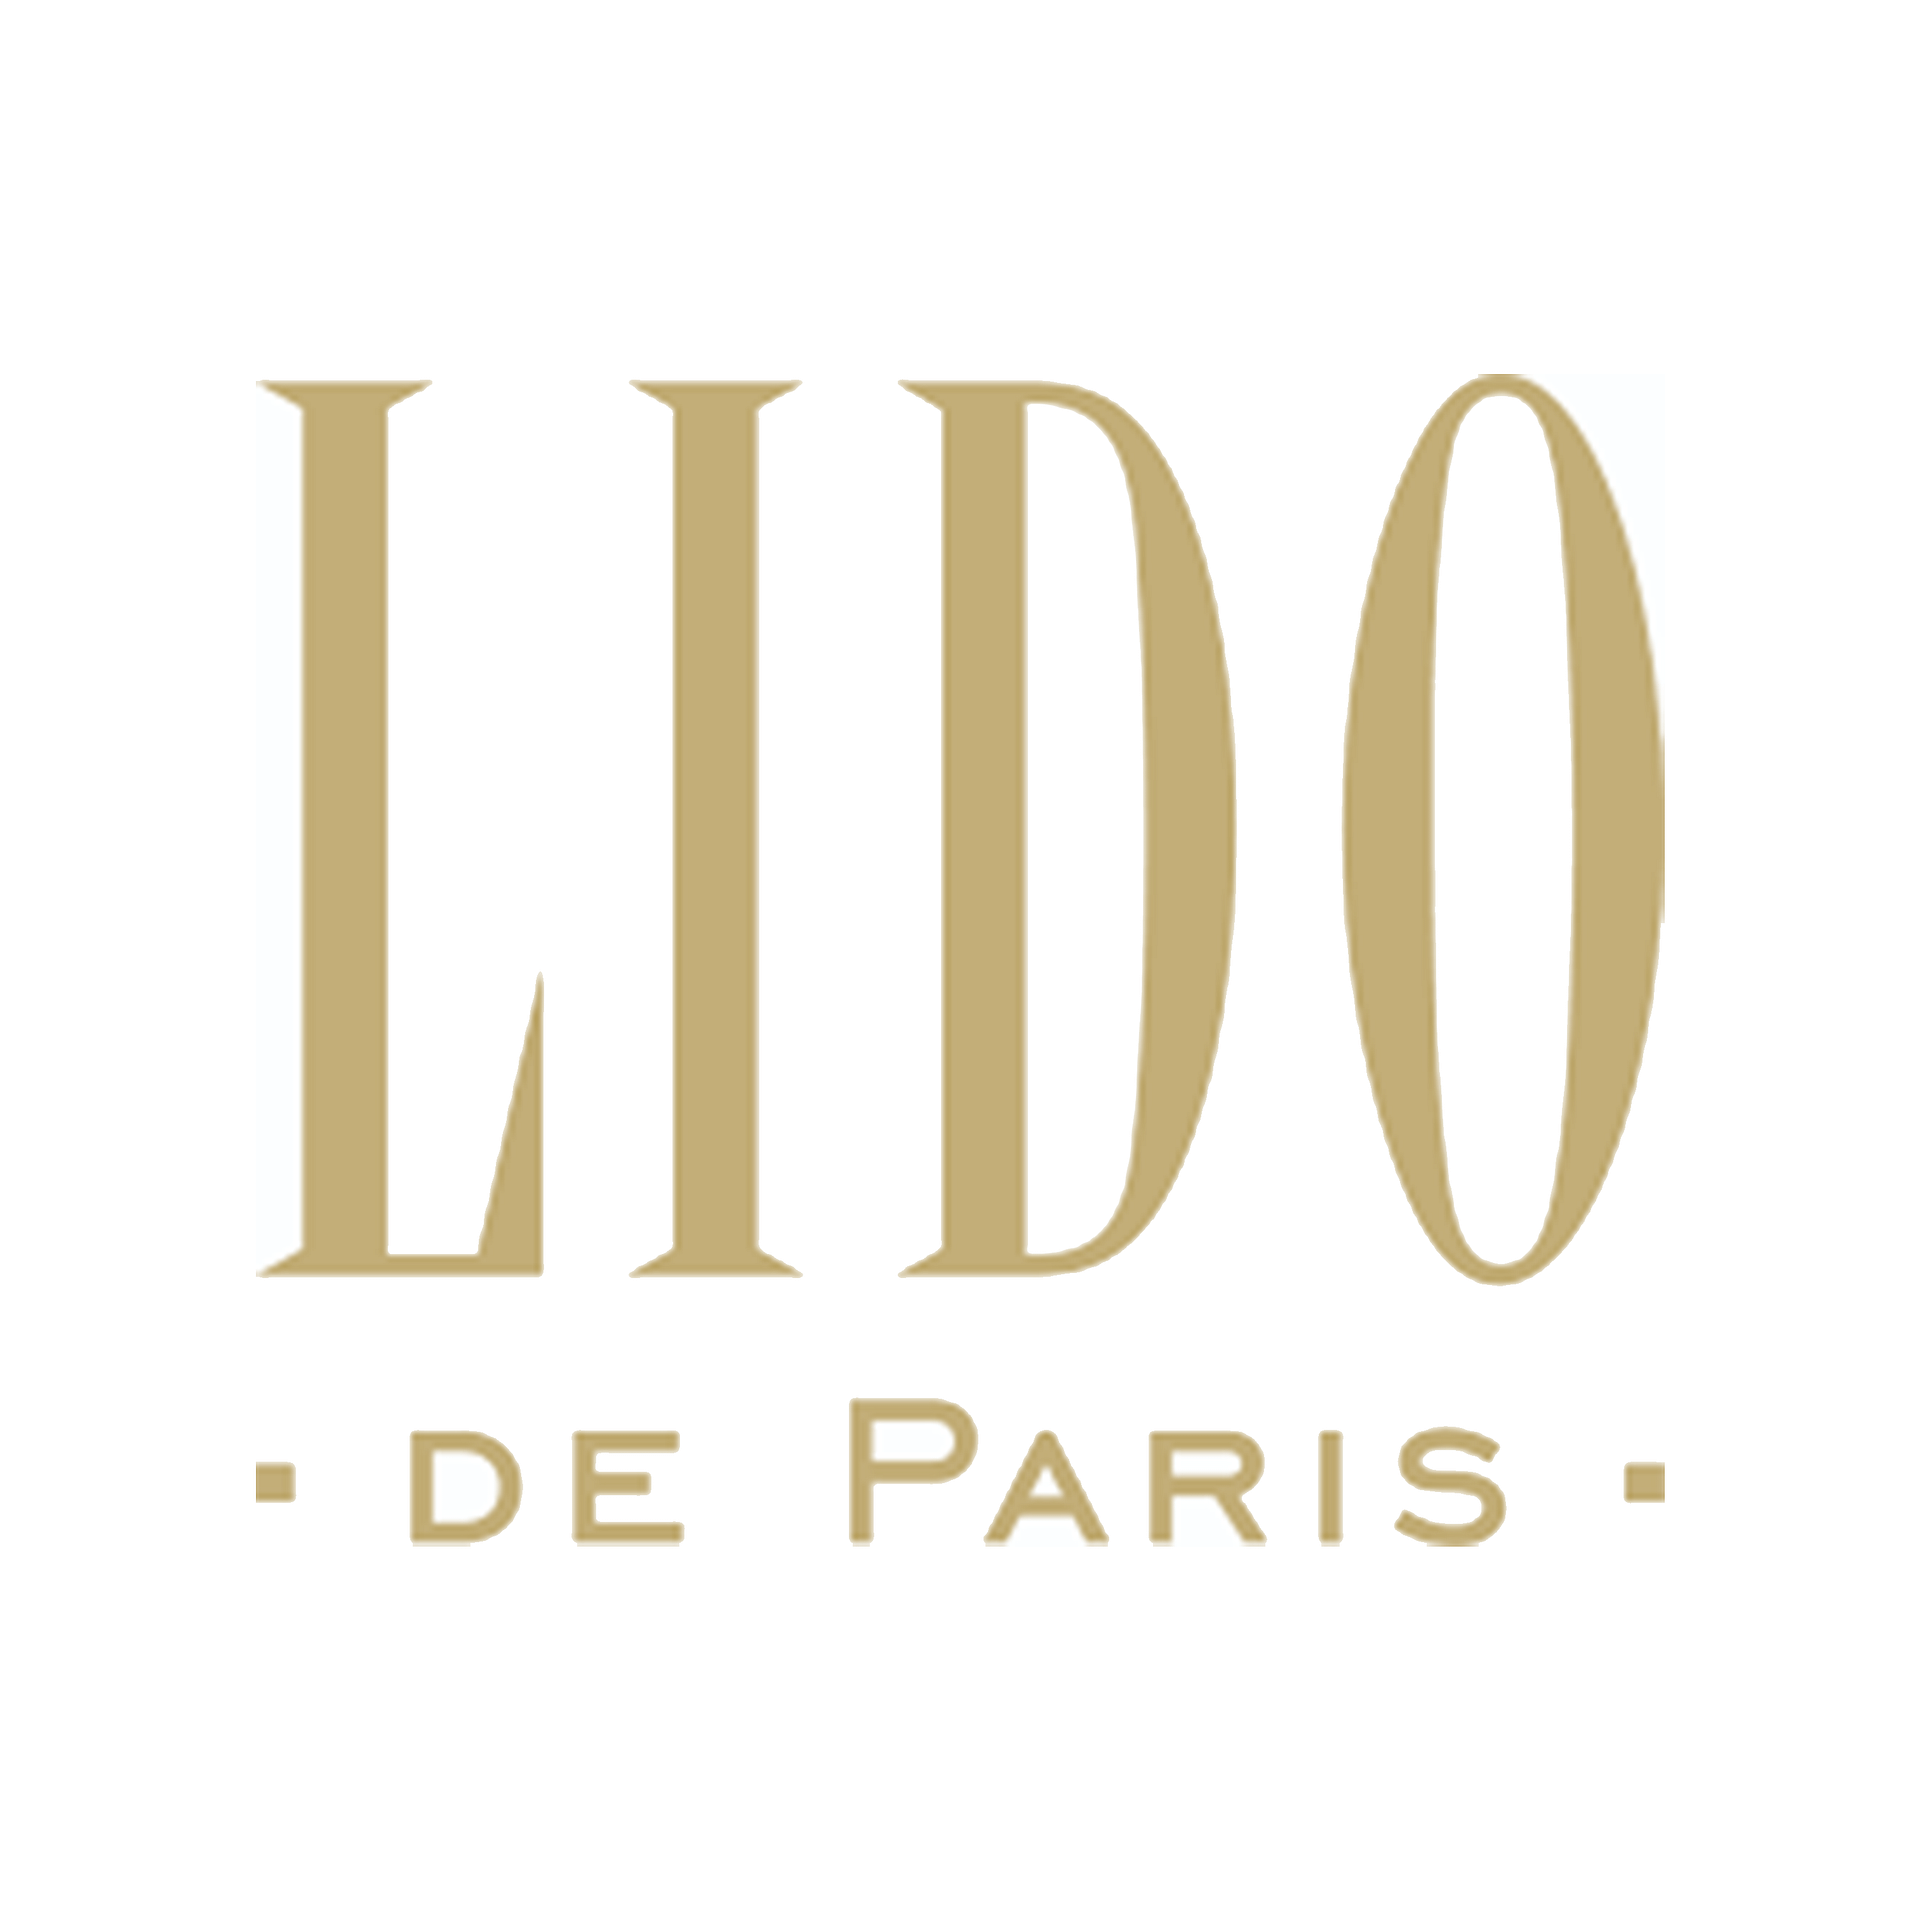 Logo-Lido-de-paris